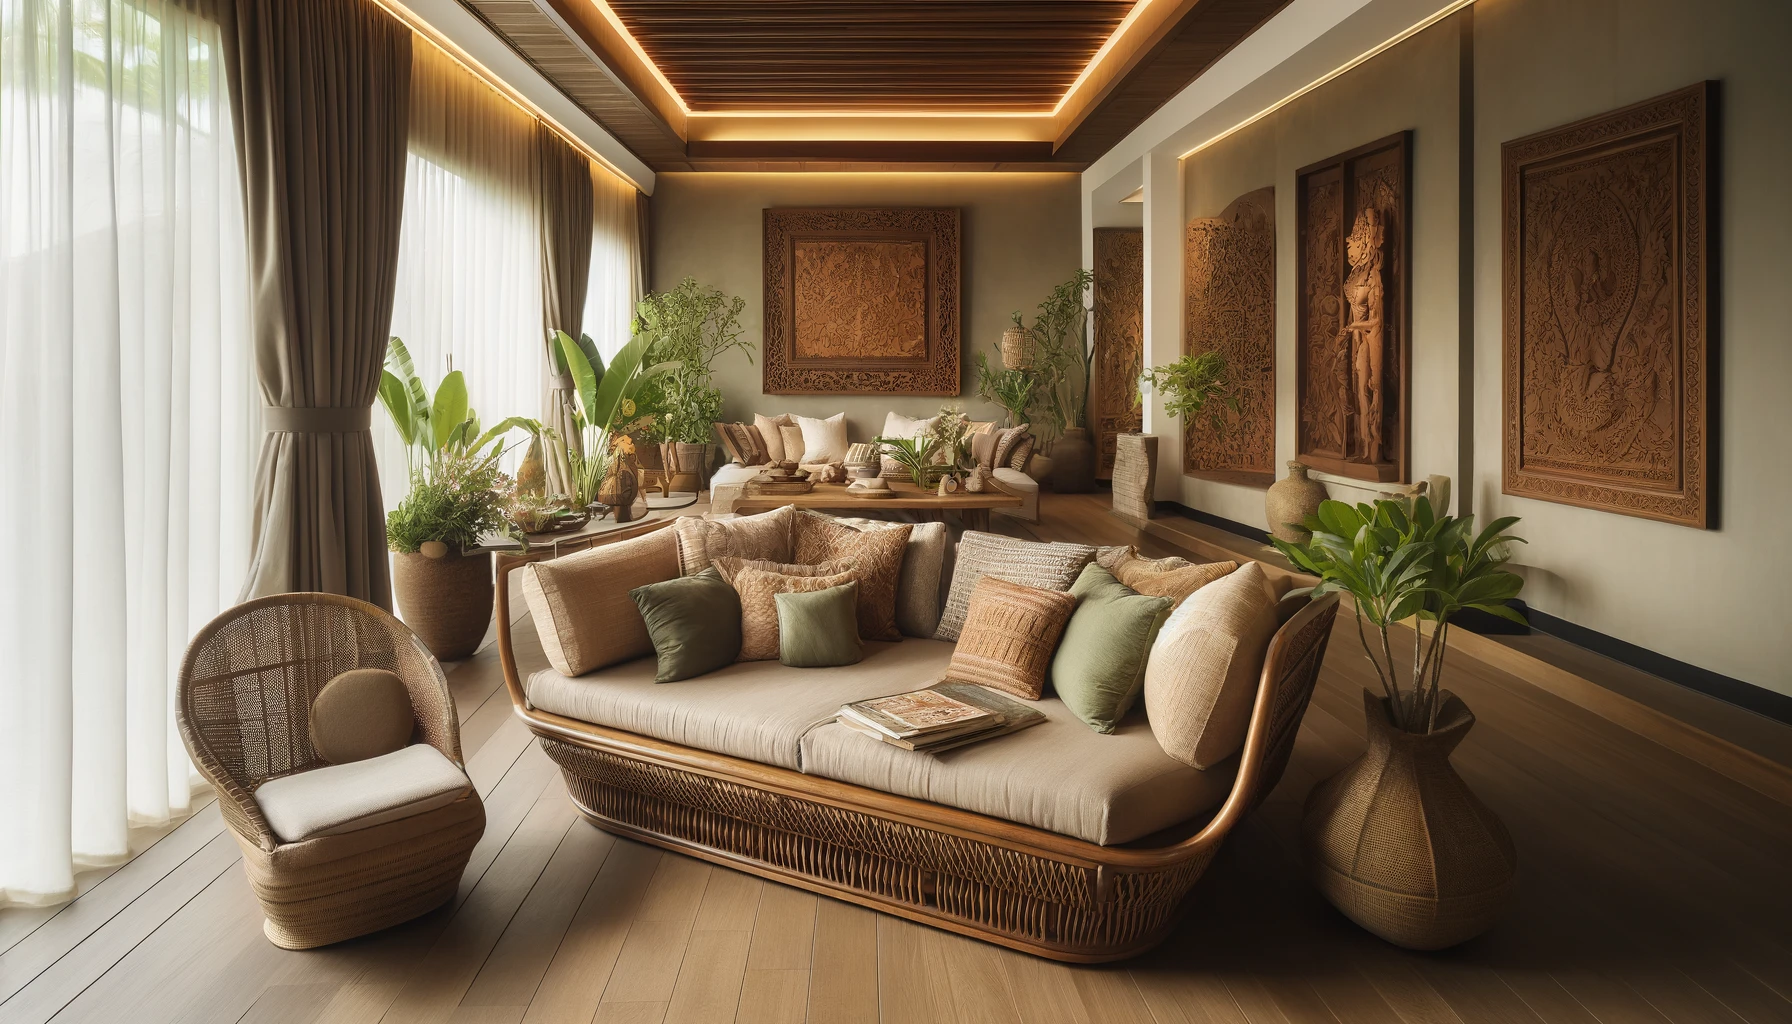 バリ風インテリアで心安らぐ空間を: 部屋をアジアンスタイルに変える家具選びのポイントを紹介 | EconoChicInteriors